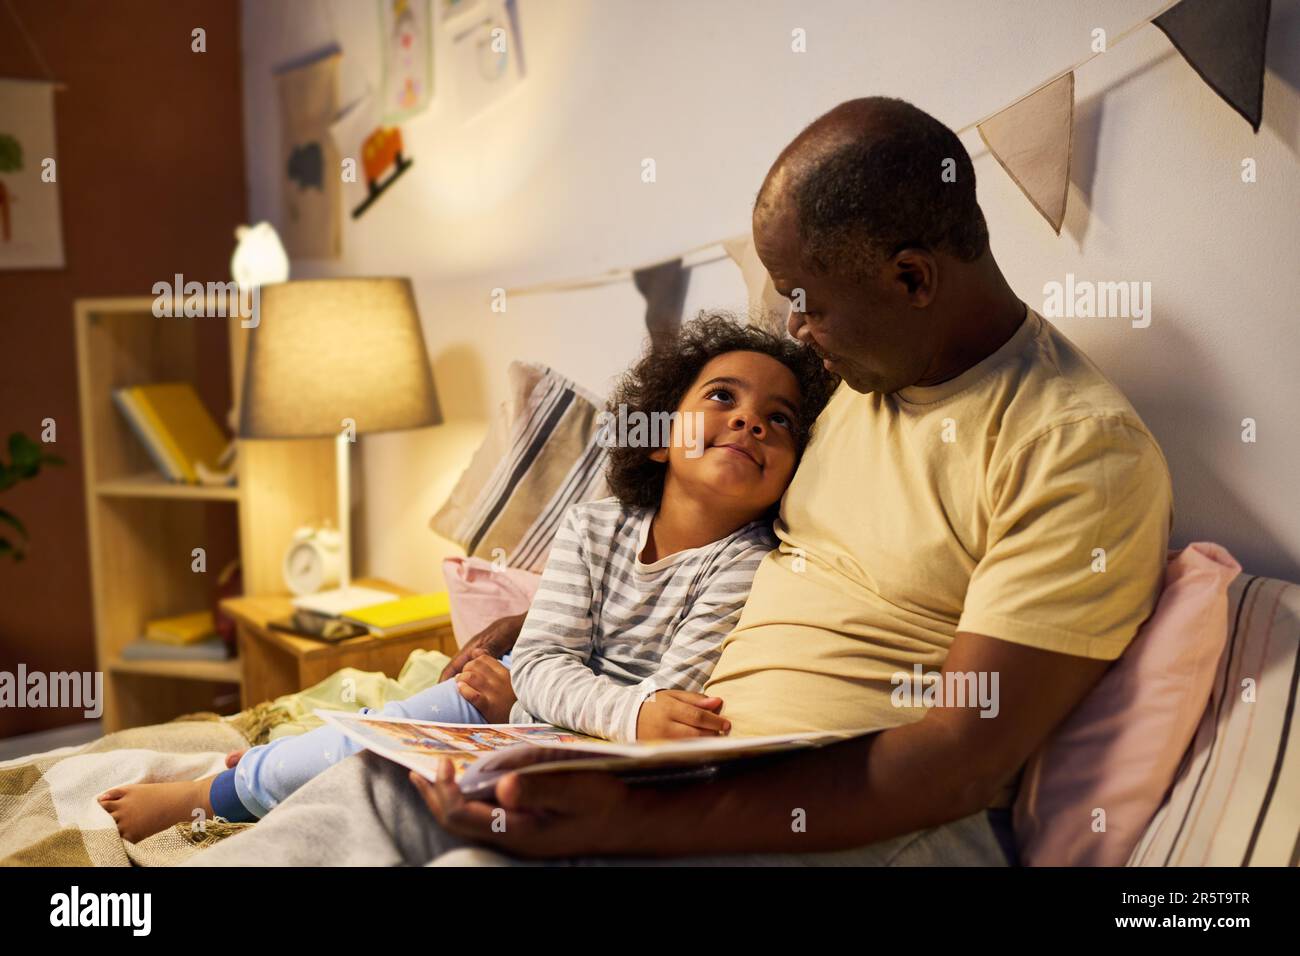 Ein afroamerikanischer Vater liest dem Kind vor dem Schlafen ein Buch vor, während er ihn im Bett umarmt Stockfoto